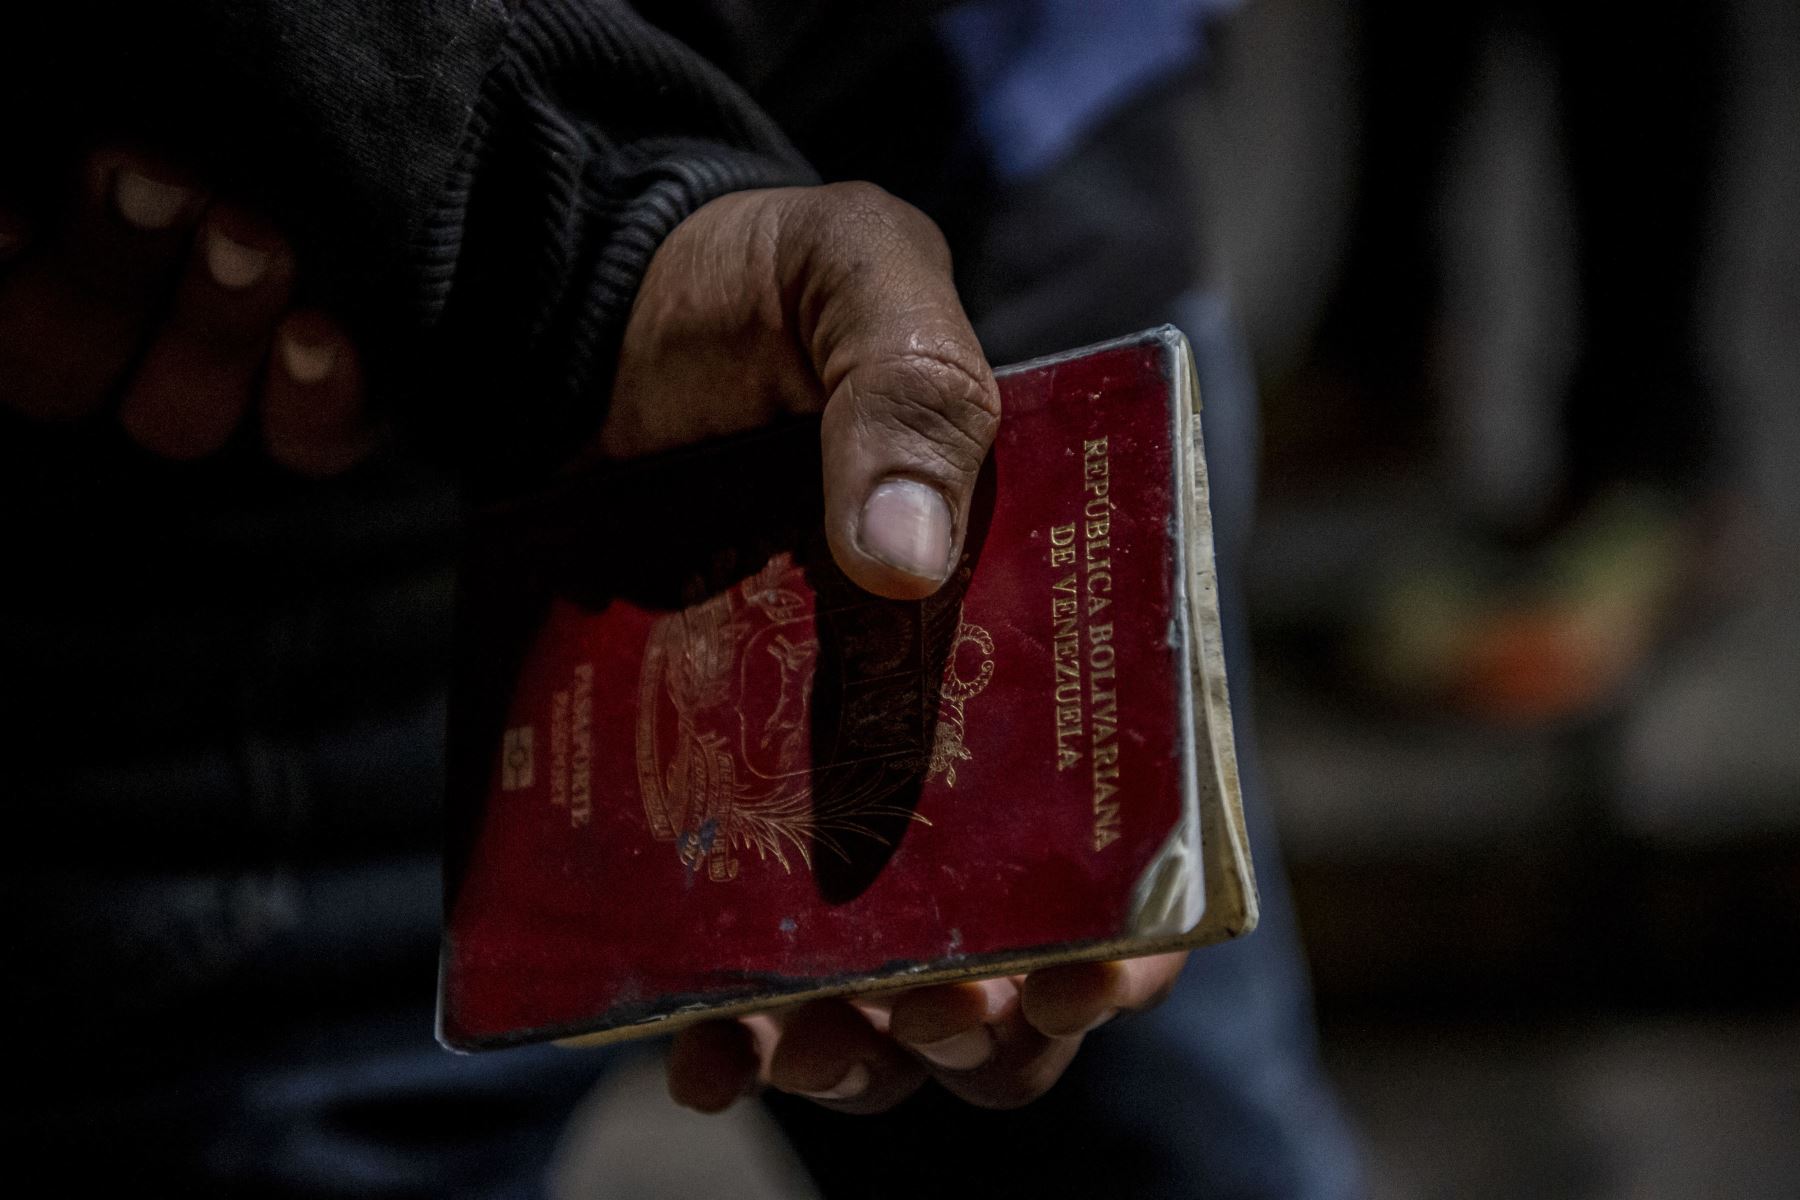 El migrante venezolano Reinaldo, de 26 años, sostiene su pasaporte, necesario para tramitar su pase sanitario antes de abordar un autobús a Santiago de Chile en medio de la pandemia de COVID-19. Foto: AFP